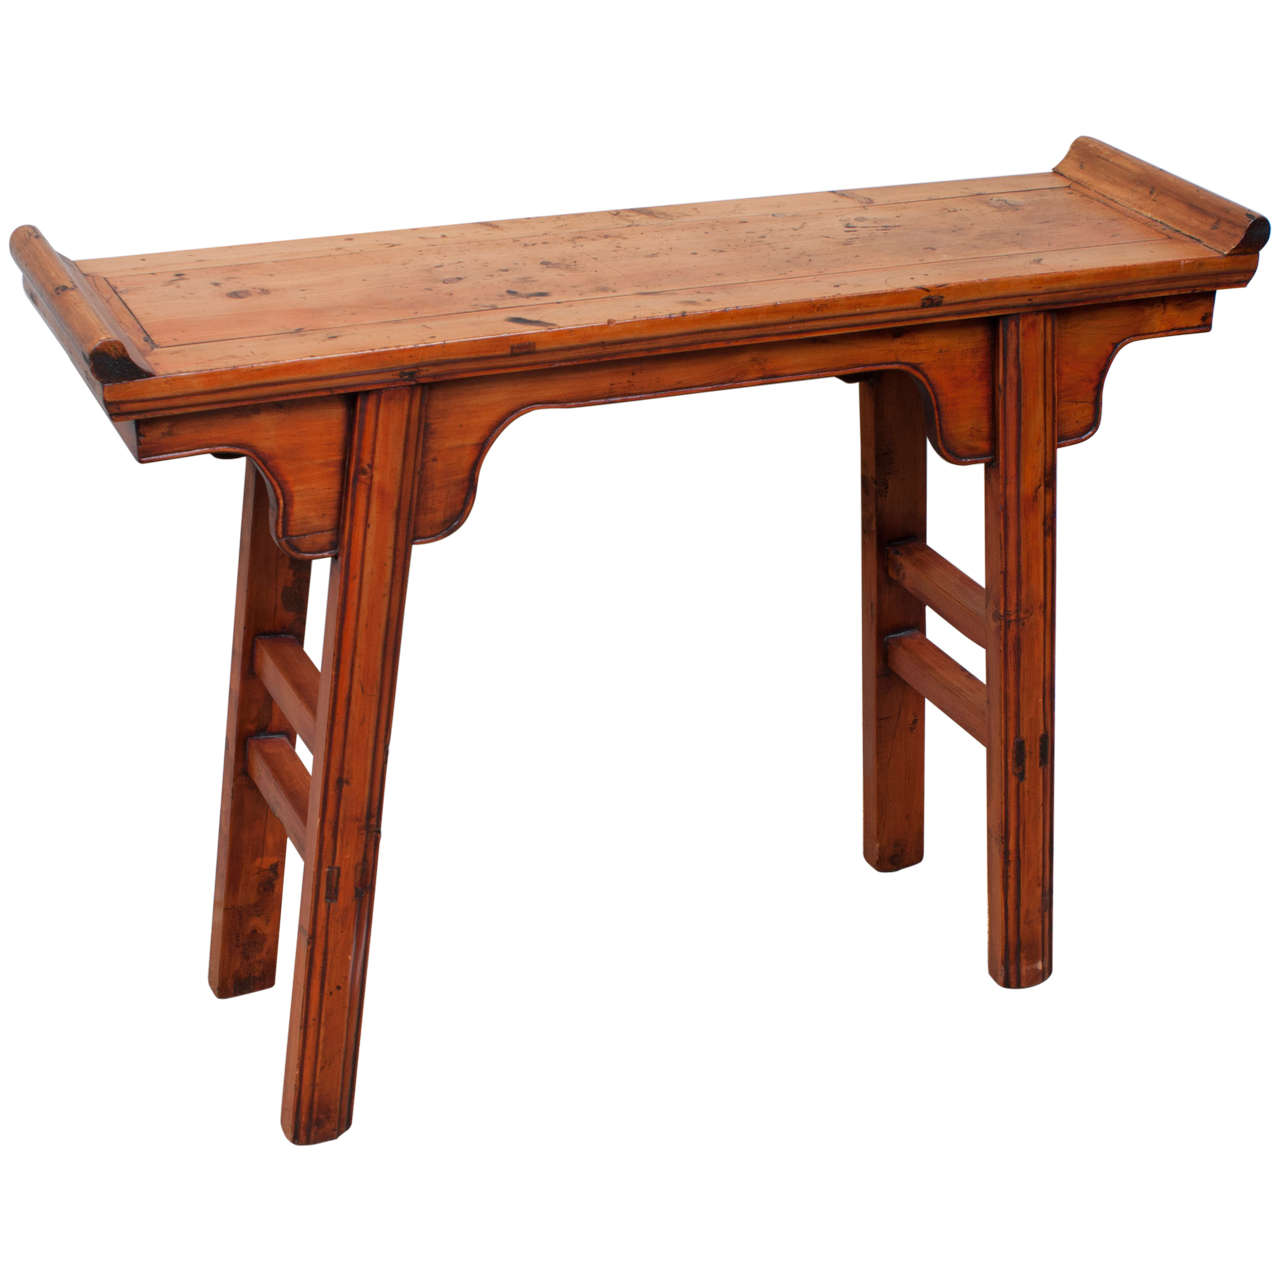 Peach Wood Altar Table For Sale